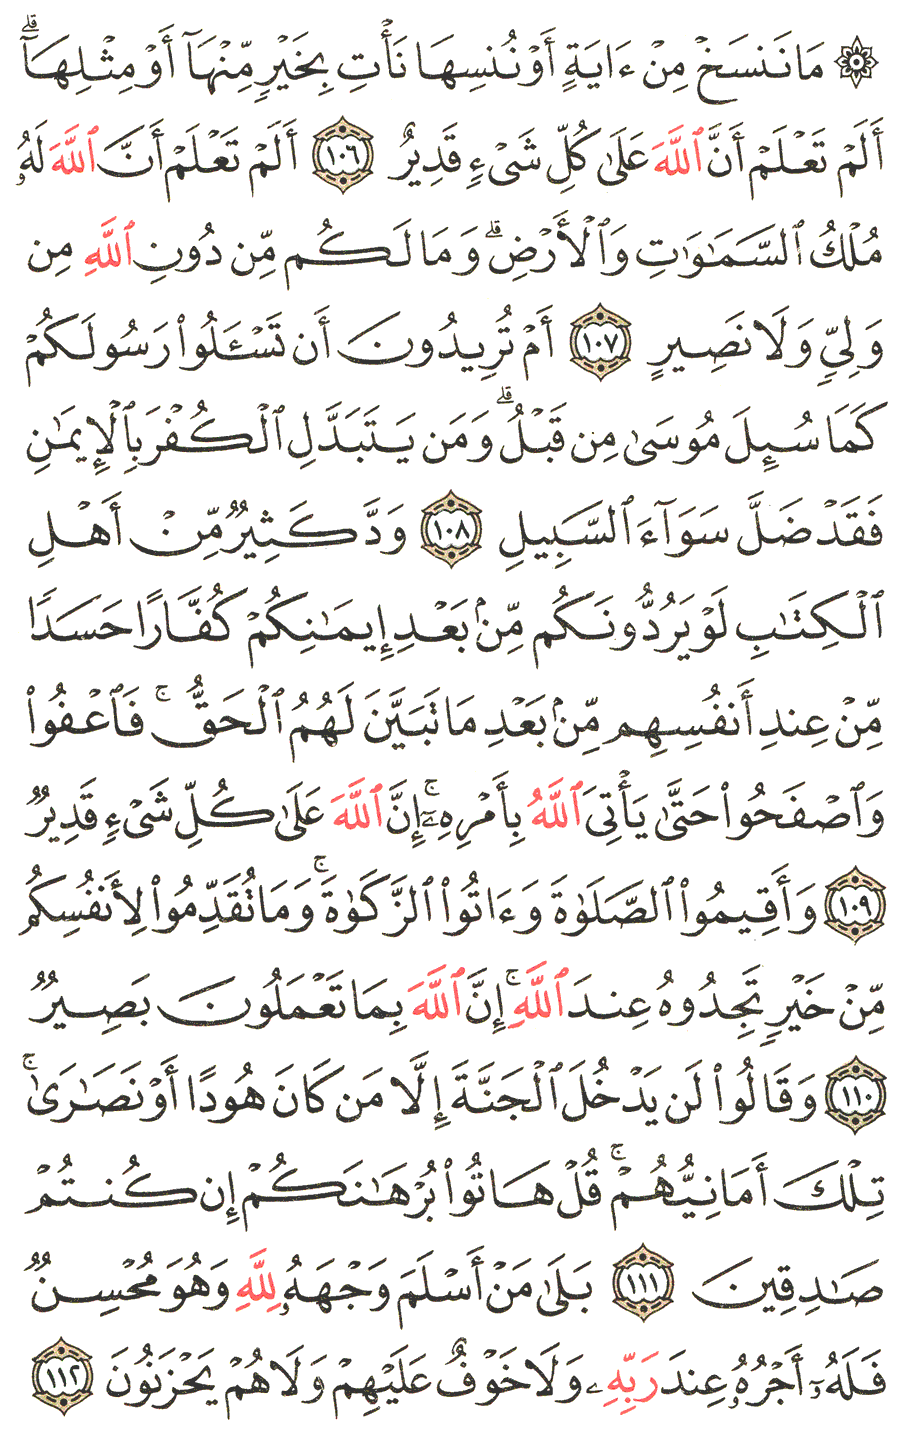 الصفحة رقم  17 من القرآن الكريم مكتوبة من المصحف